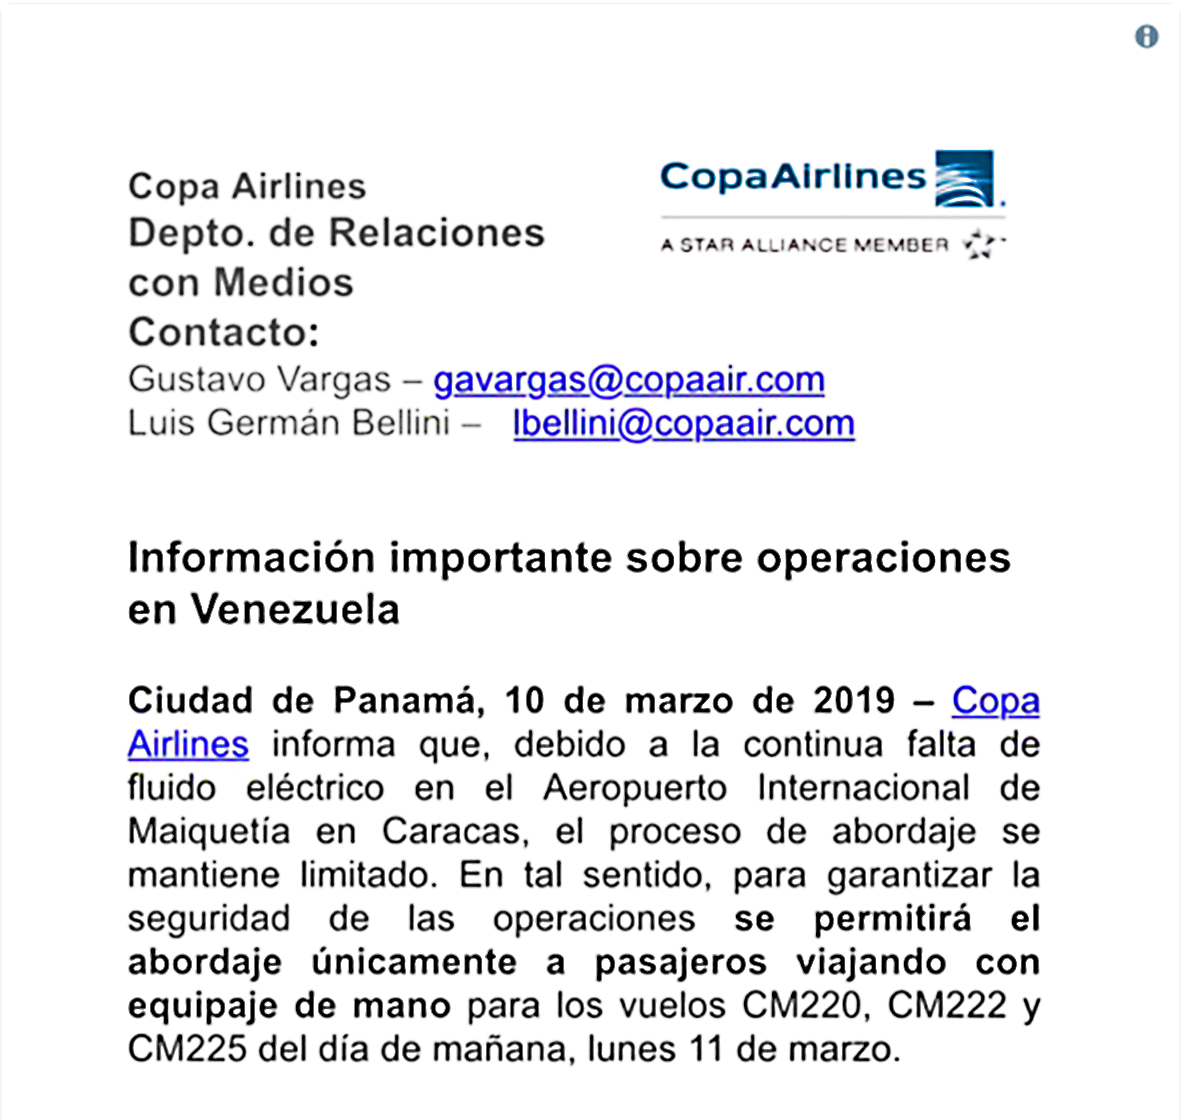 Copa Airlines solamente permitirá abordaje con equipaje de mano